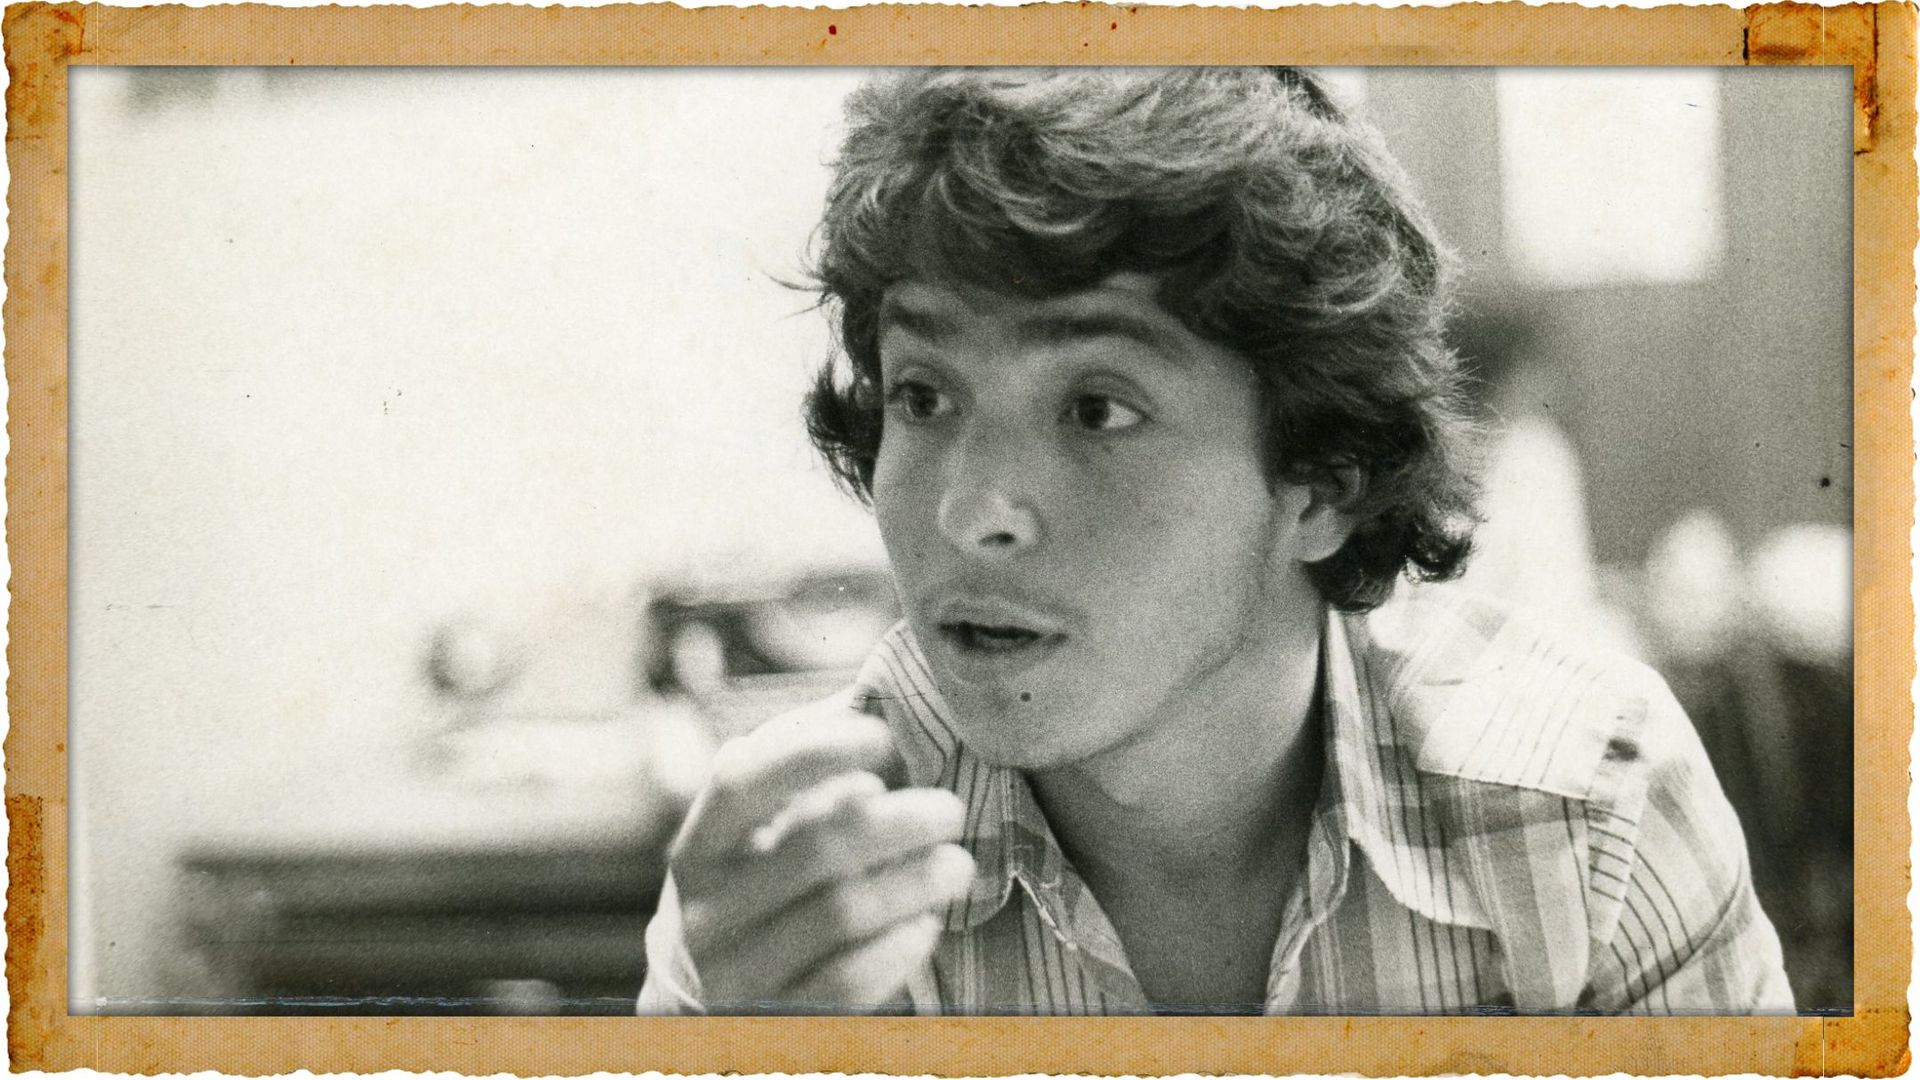 Data 17-12-1978 - Luiz Carlos Cabrera Crespo (Carlinhos), irmão de Araceli Cabrera Crespo - Foto Acervo A Gazeta